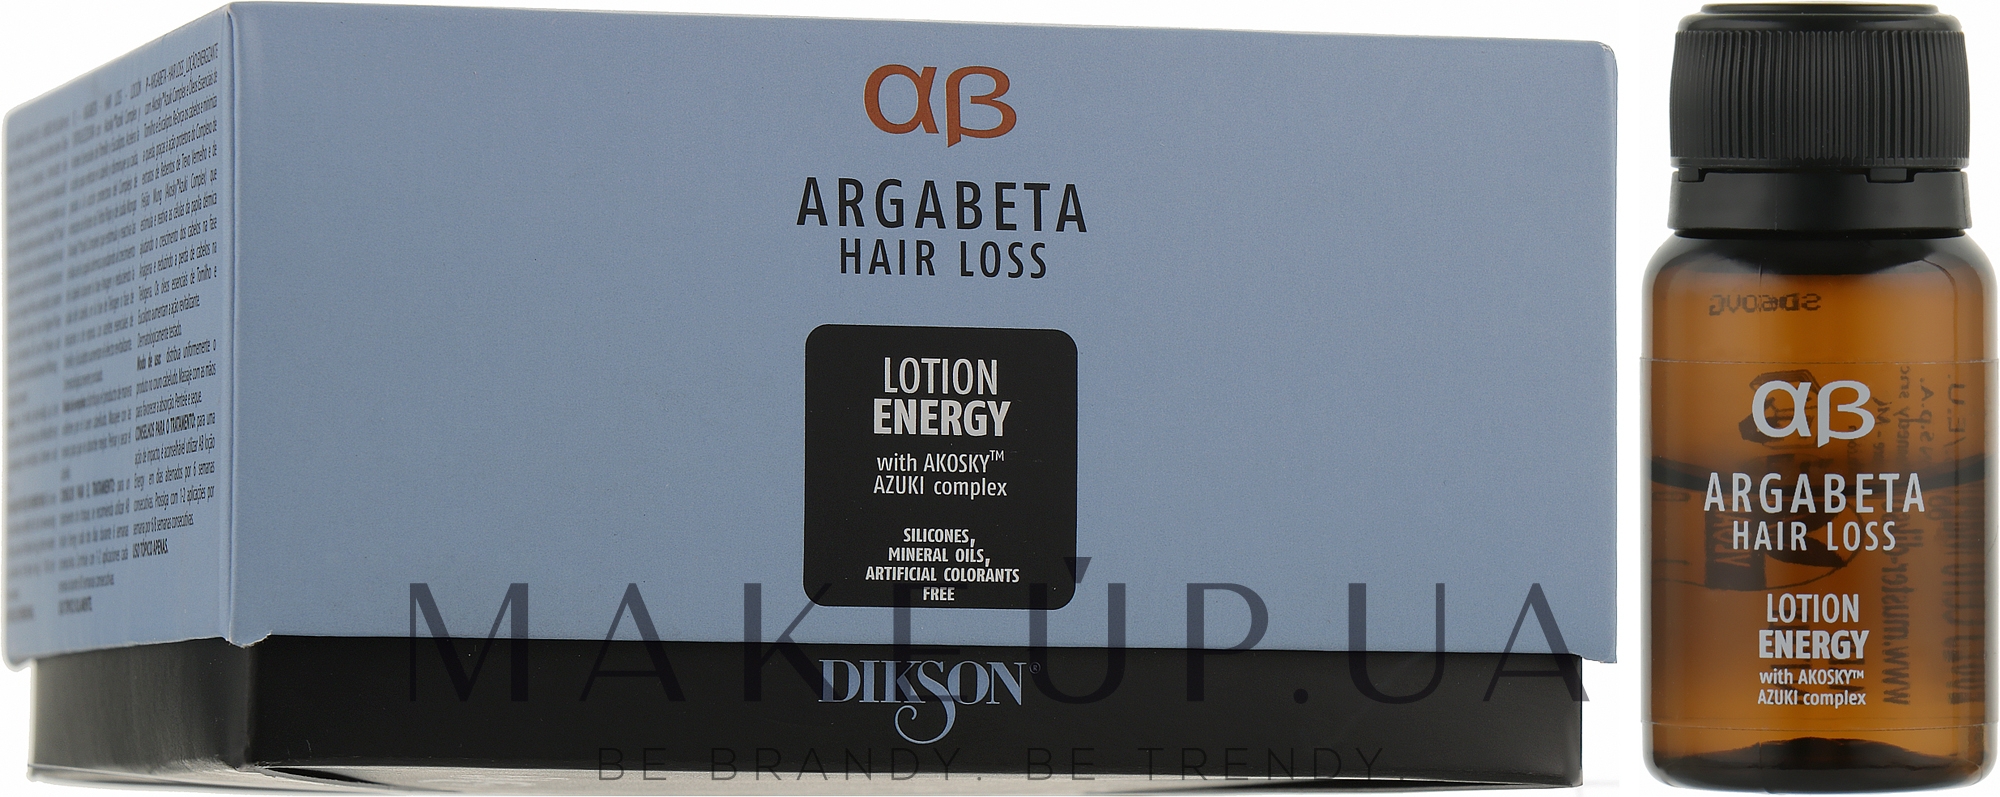 Ампулы для роста против выпадения волос - Dikson Argabeta Lotion Energy  — фото 8x8ml